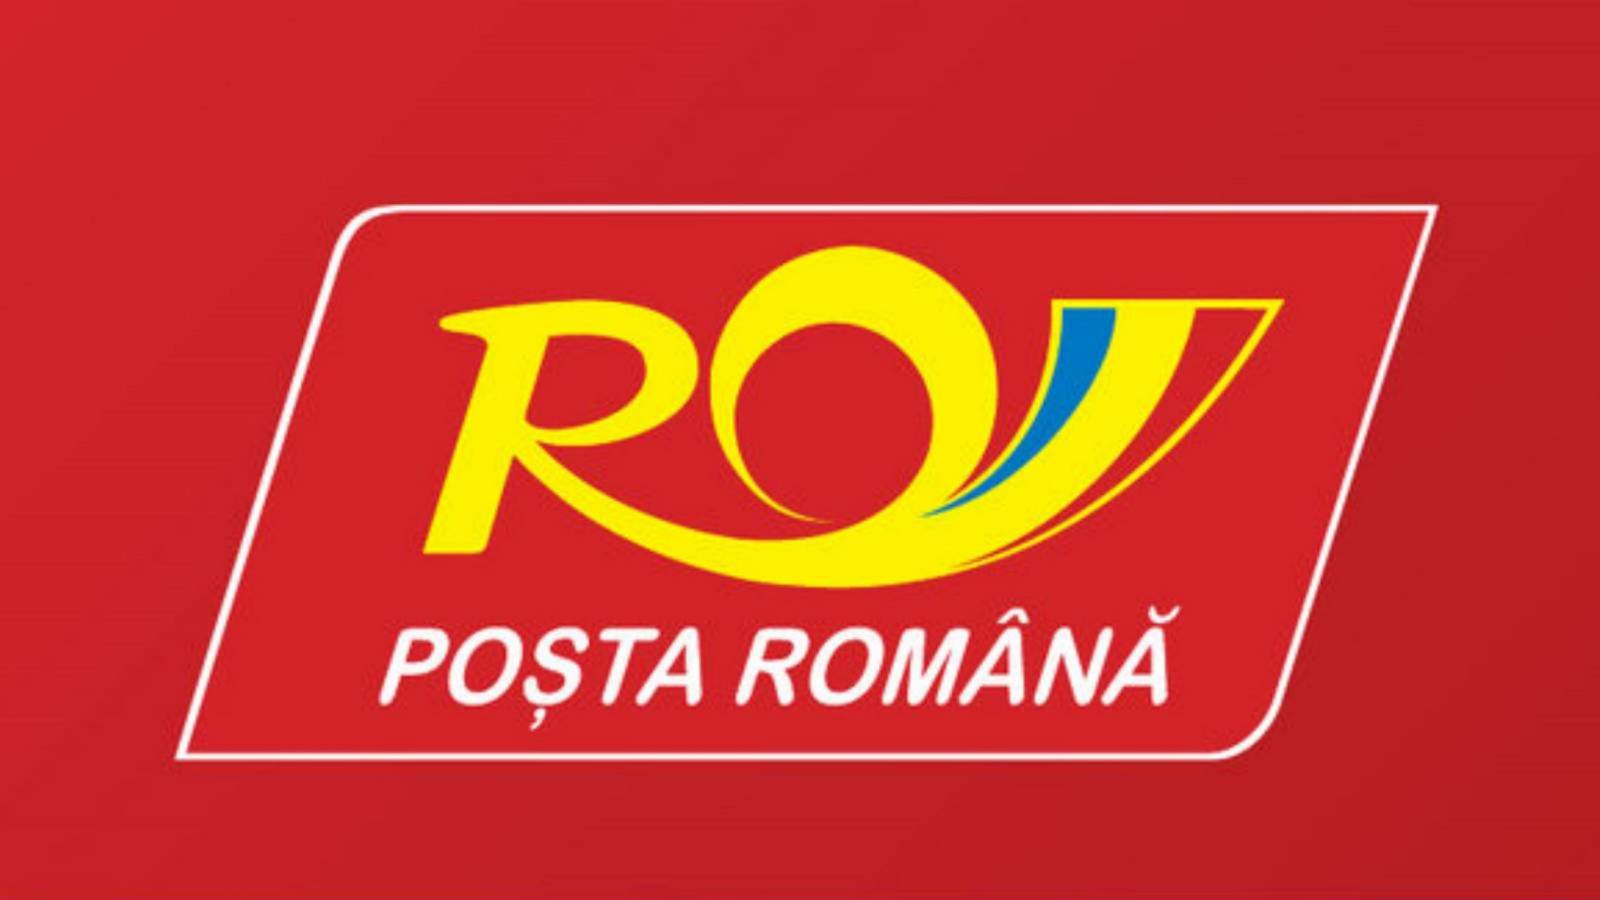 Roemeense post LET OP, zeer belangrijke boodschap voor Roemenen